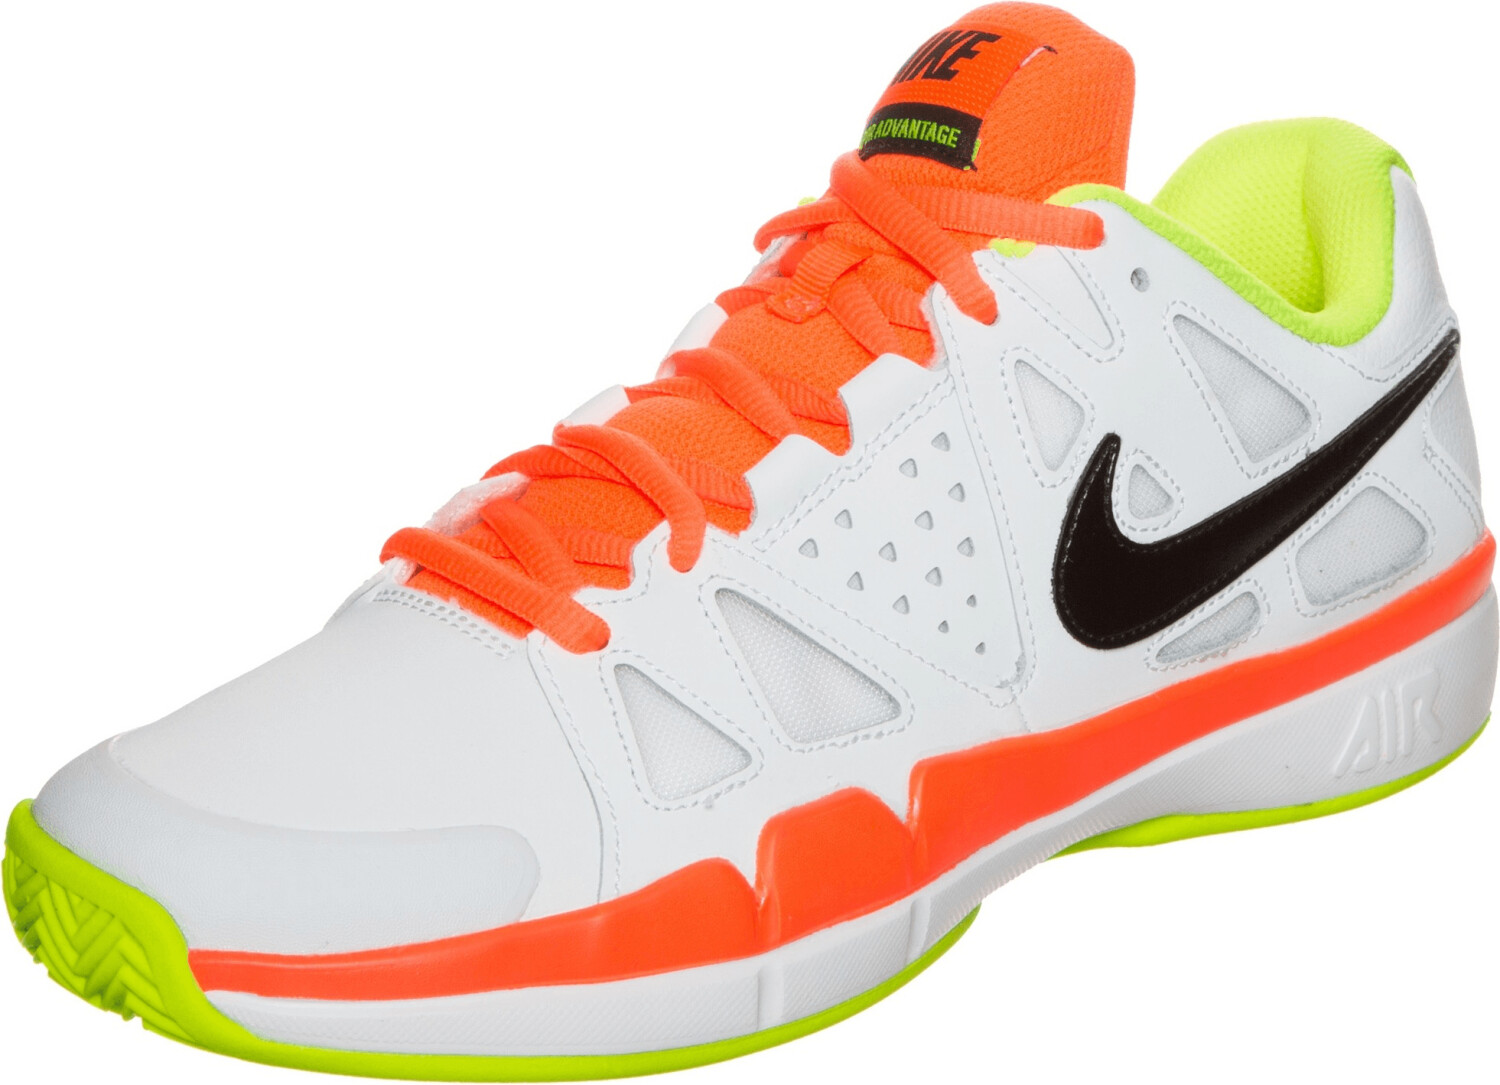 Nike NikeCourt Air Vapor Advantage Clay white/black/volt/total orange